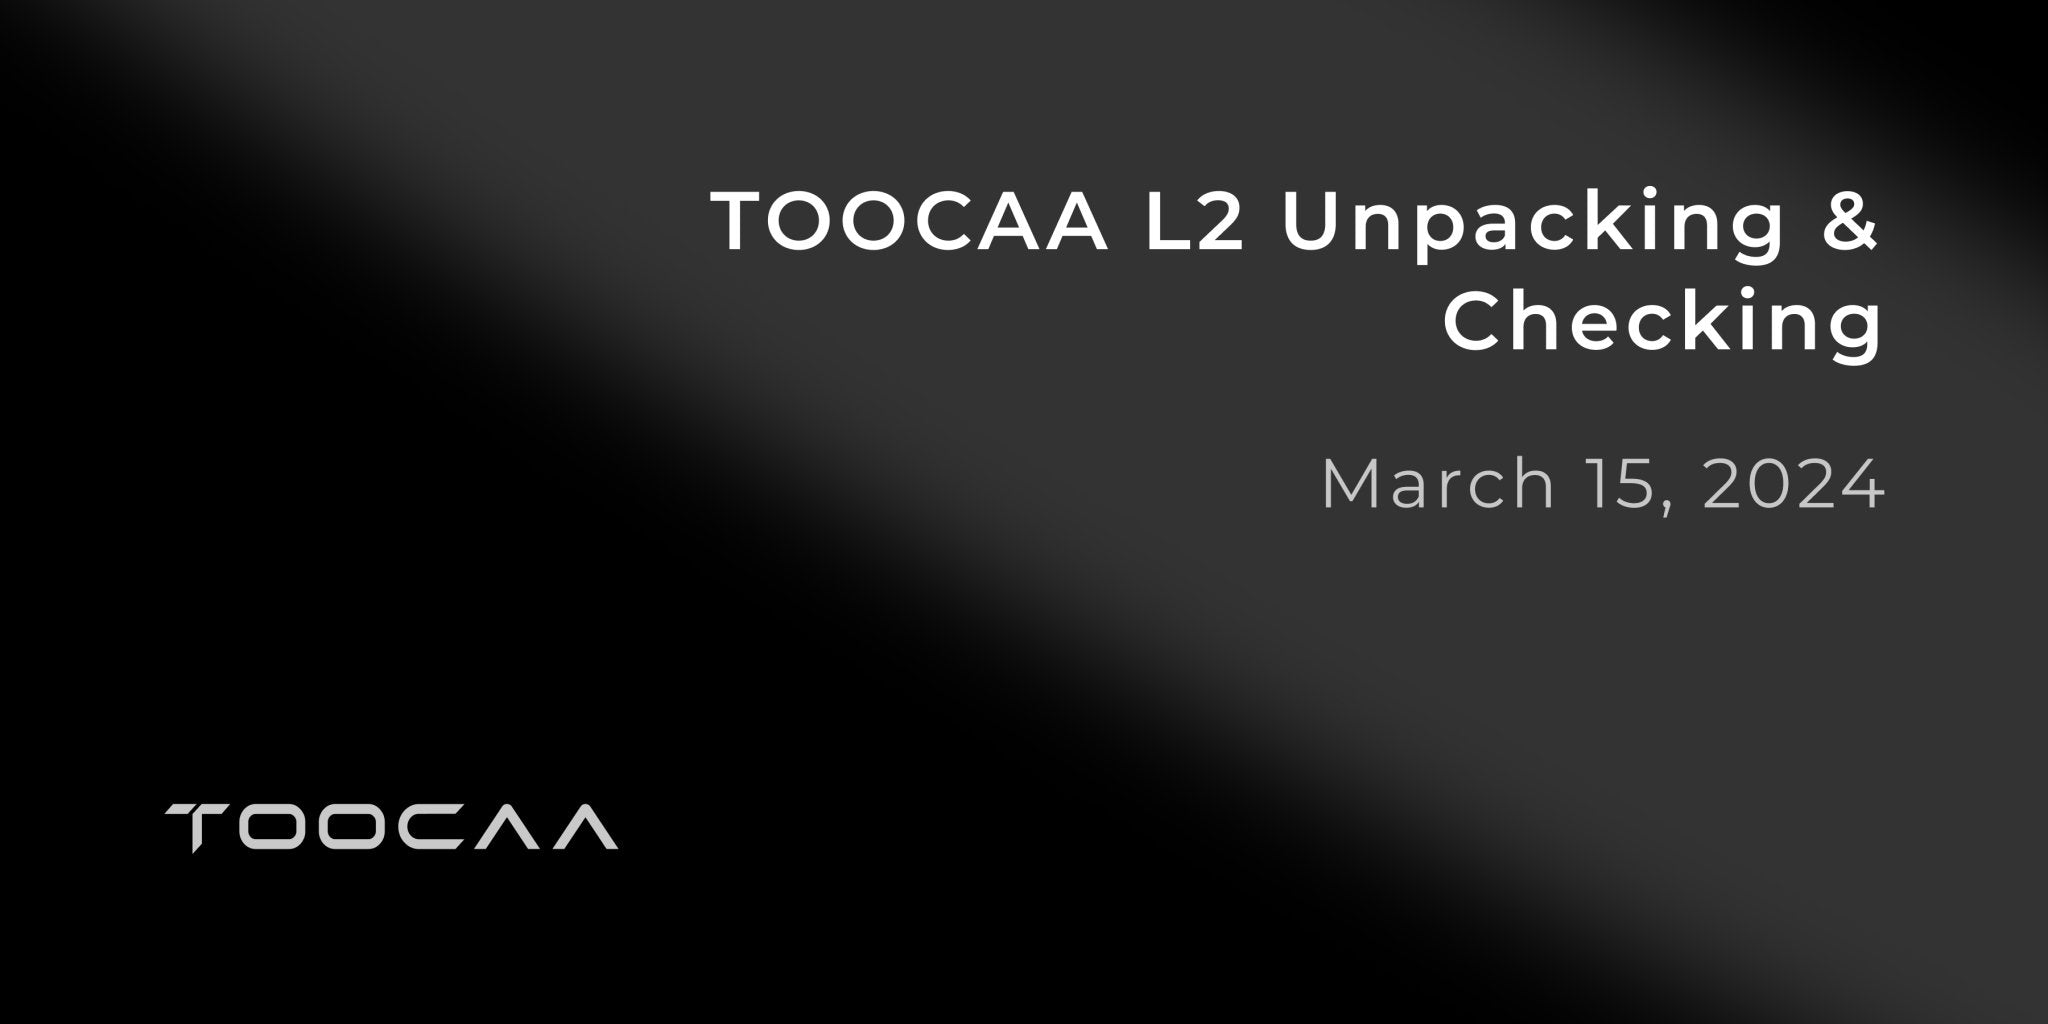 TOOCAA L2 Unpacking & Checking